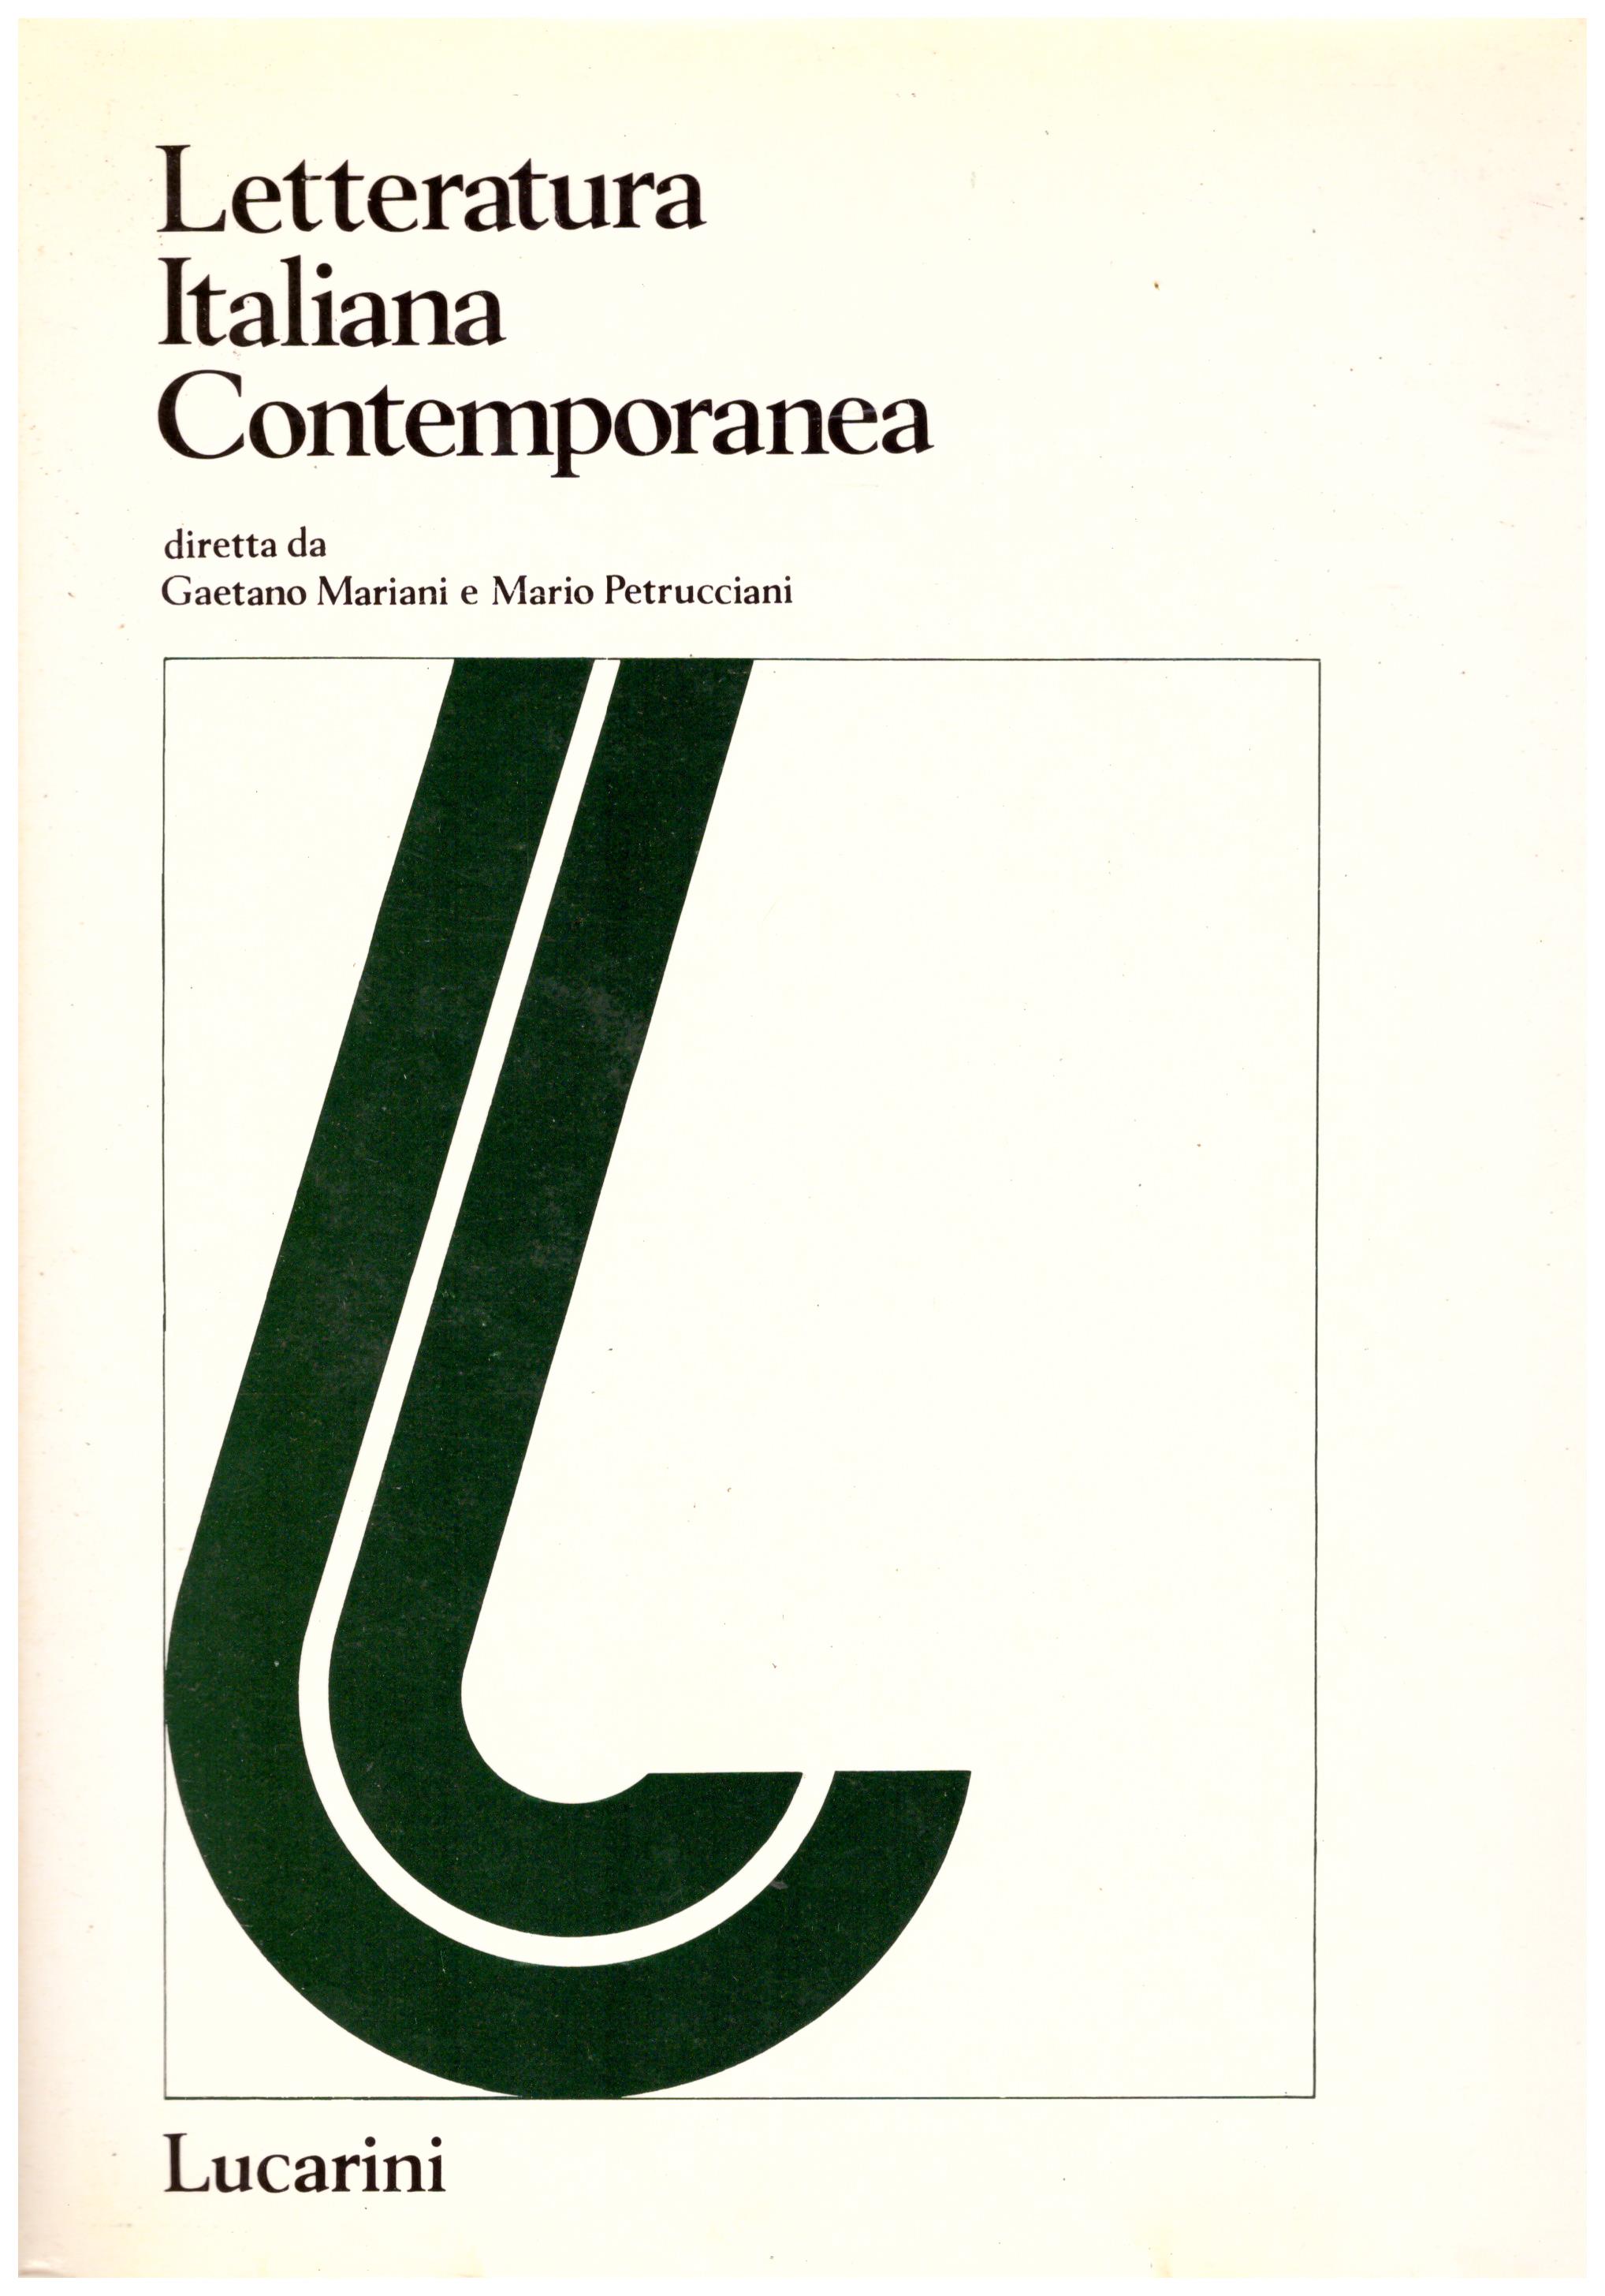 Titolo: Letteratura italiana contemporanea appendice 6 196  Autore: AA.VV.  Editore: Lucarini